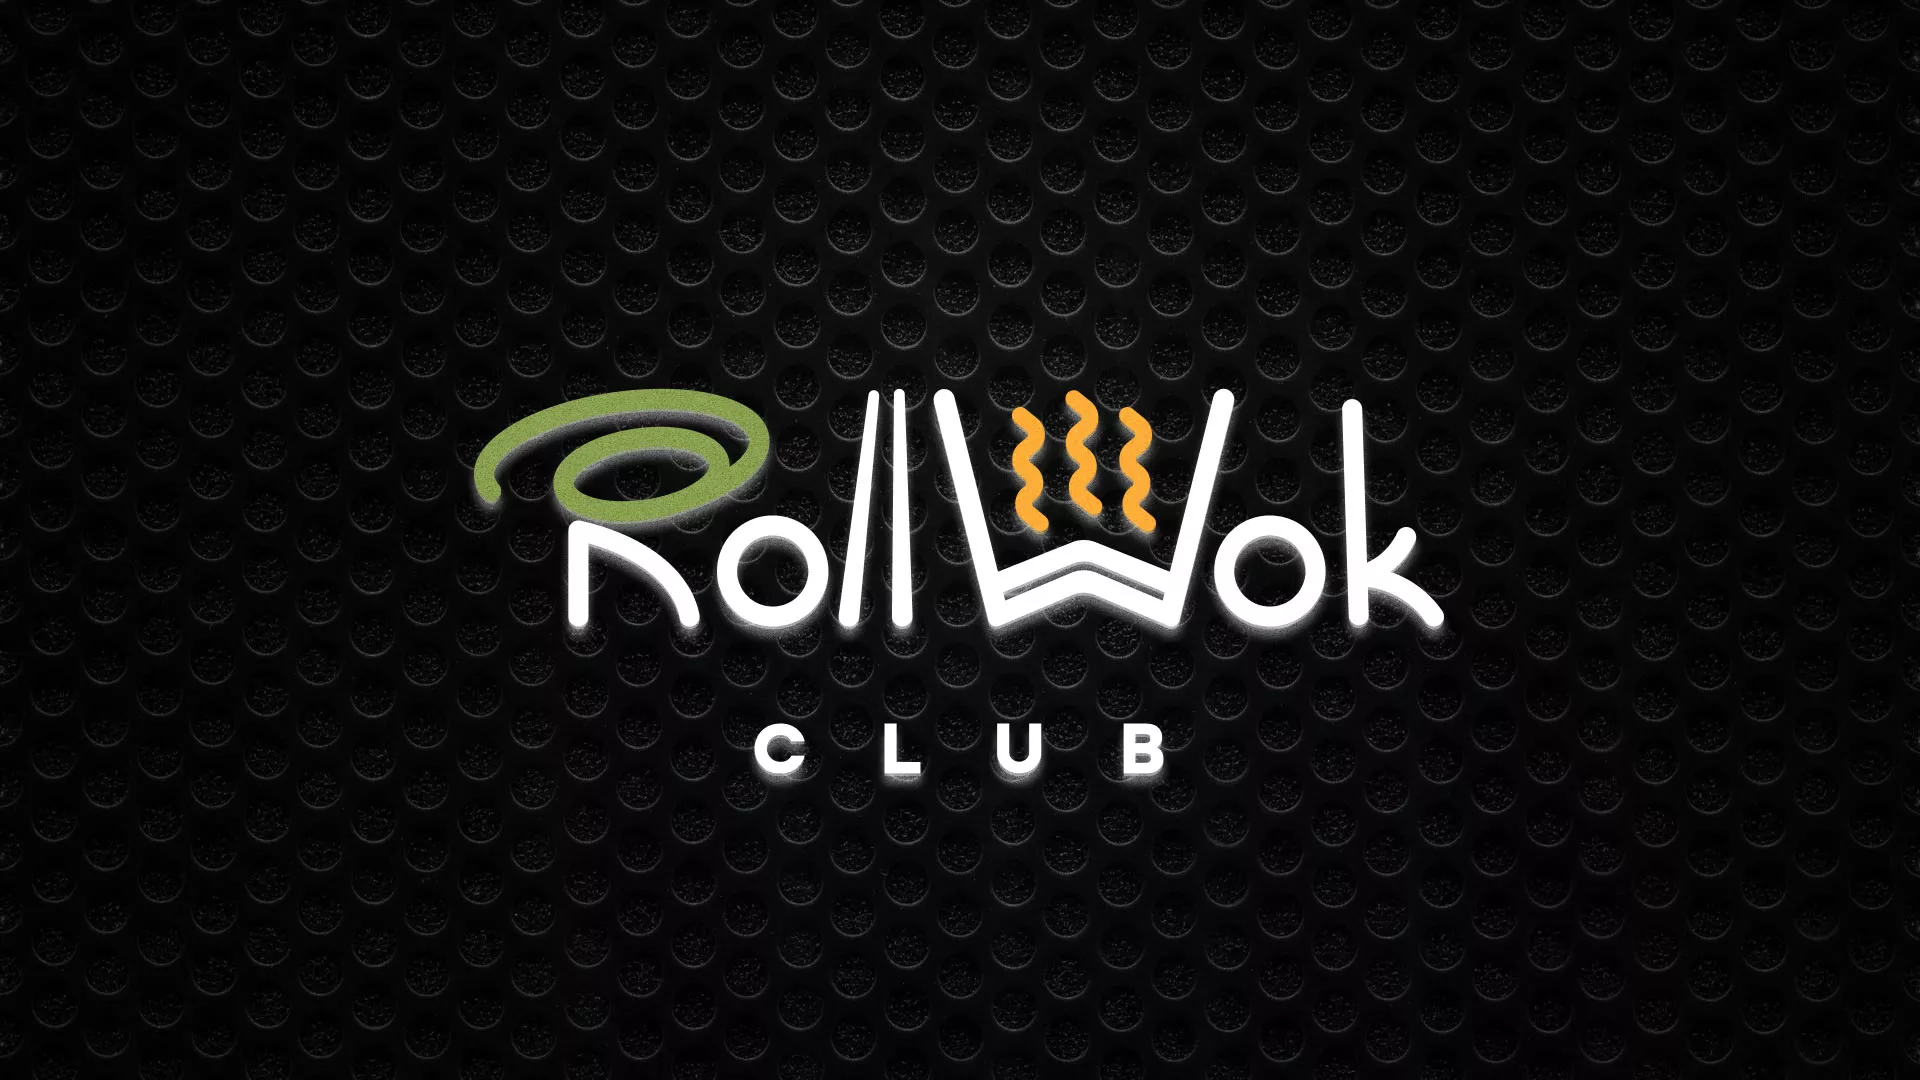 Брендирование торговых точек суши-бара «Roll Wok Club» в Ипатово